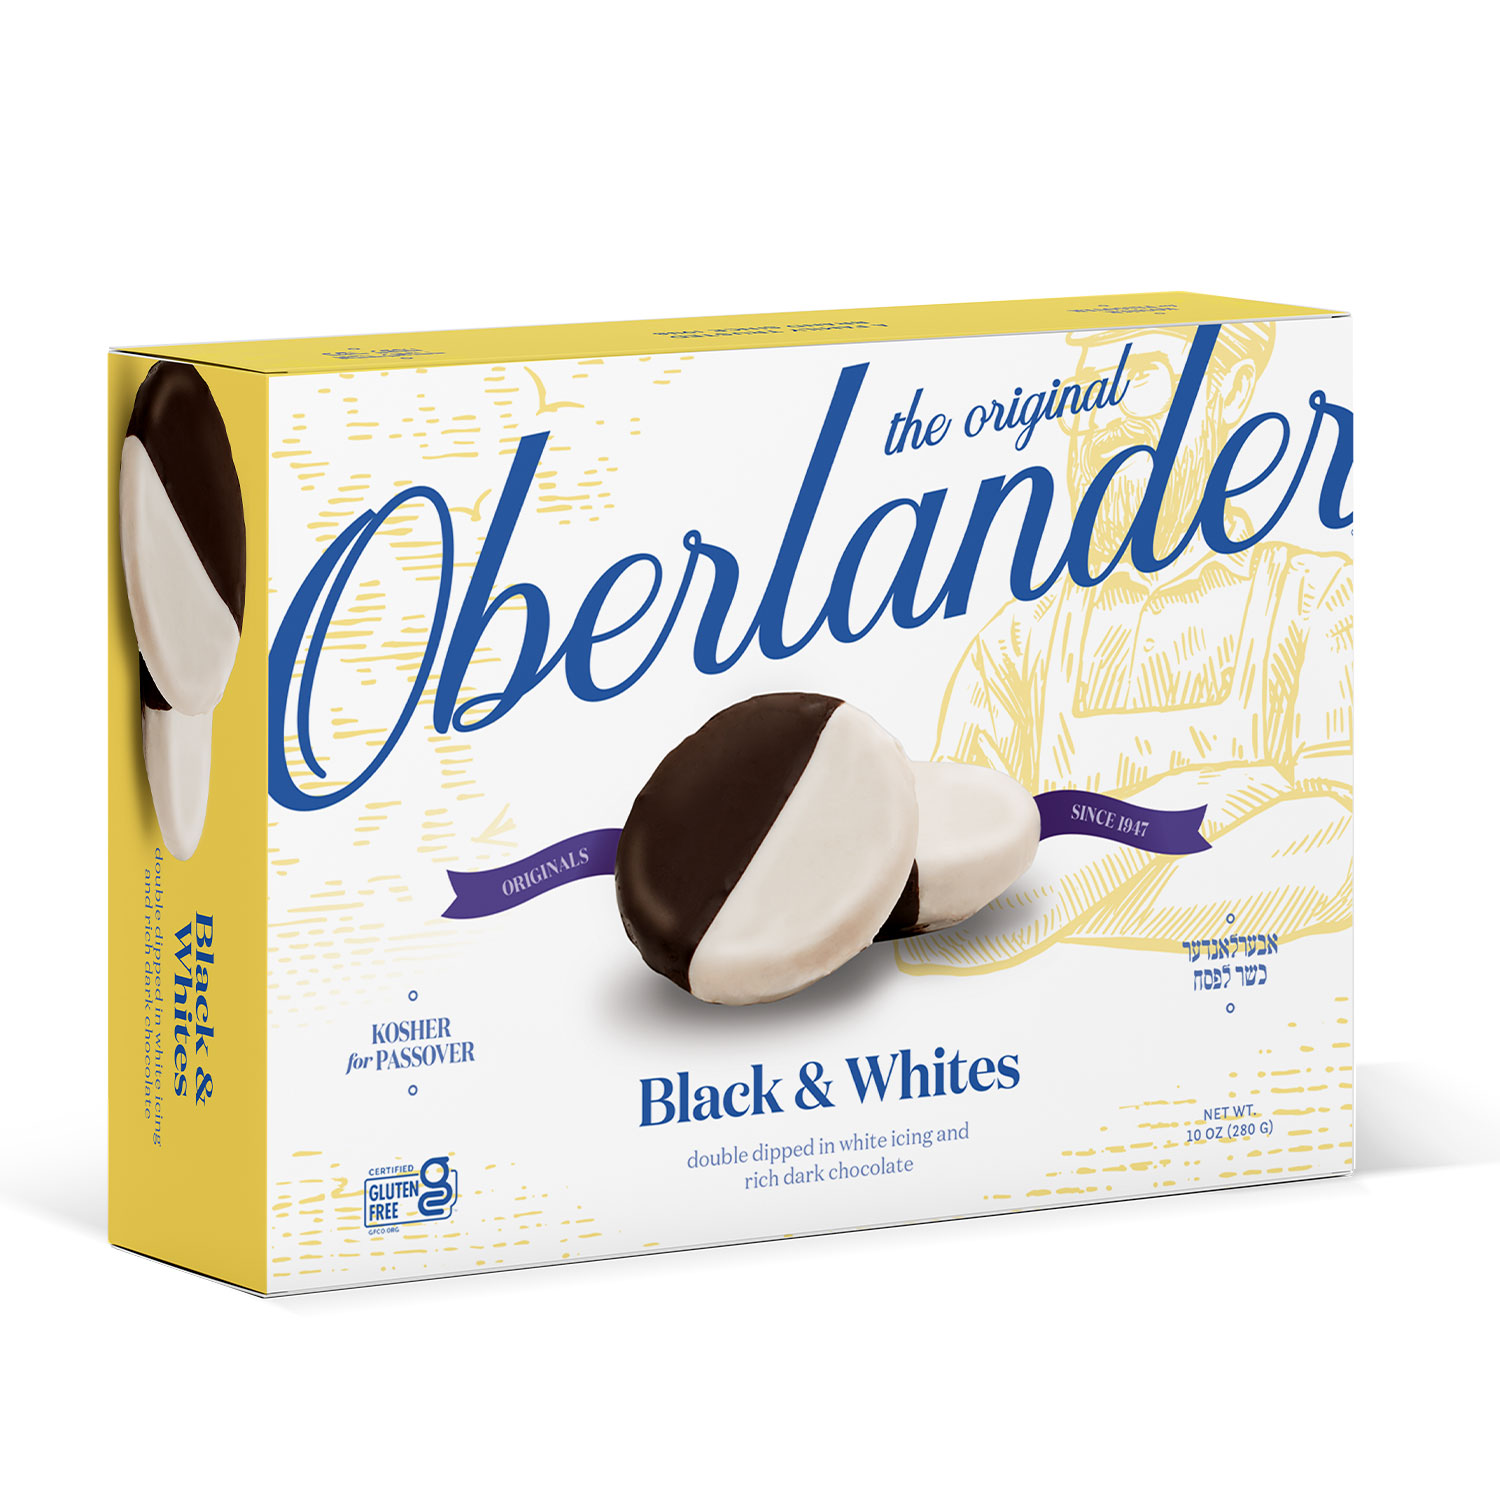 OBERLANDER BLACK & WHITE COOKIES